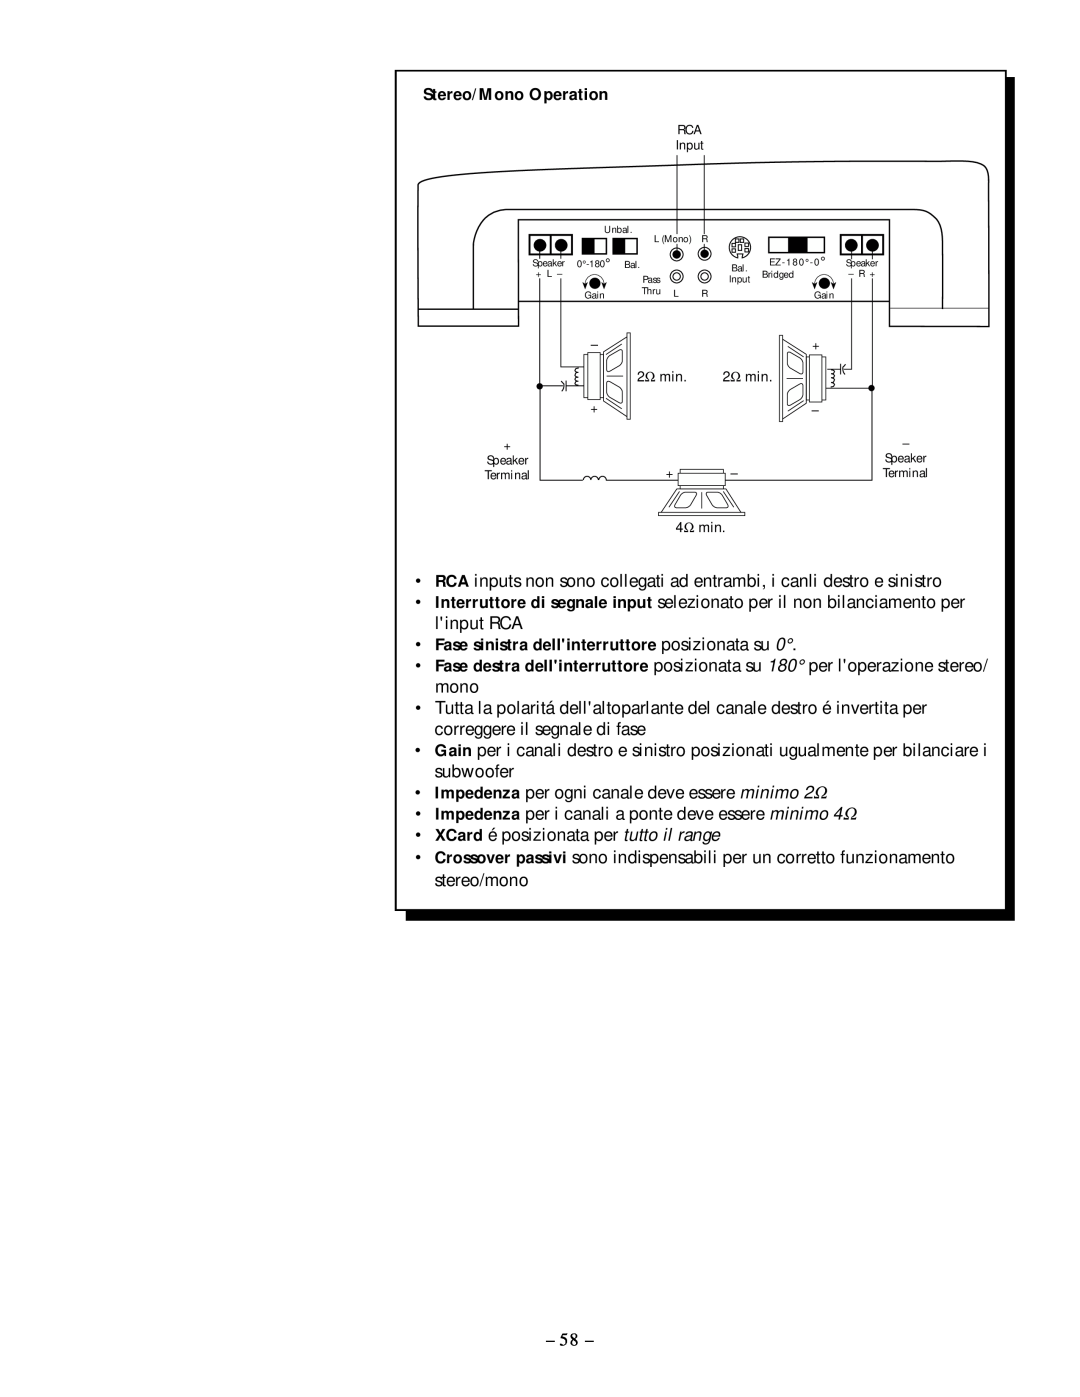 Rockford Fosgate 250.1 manual Stereo/Mono Operation, Fase sinistra dellinterruttore posizionata su 